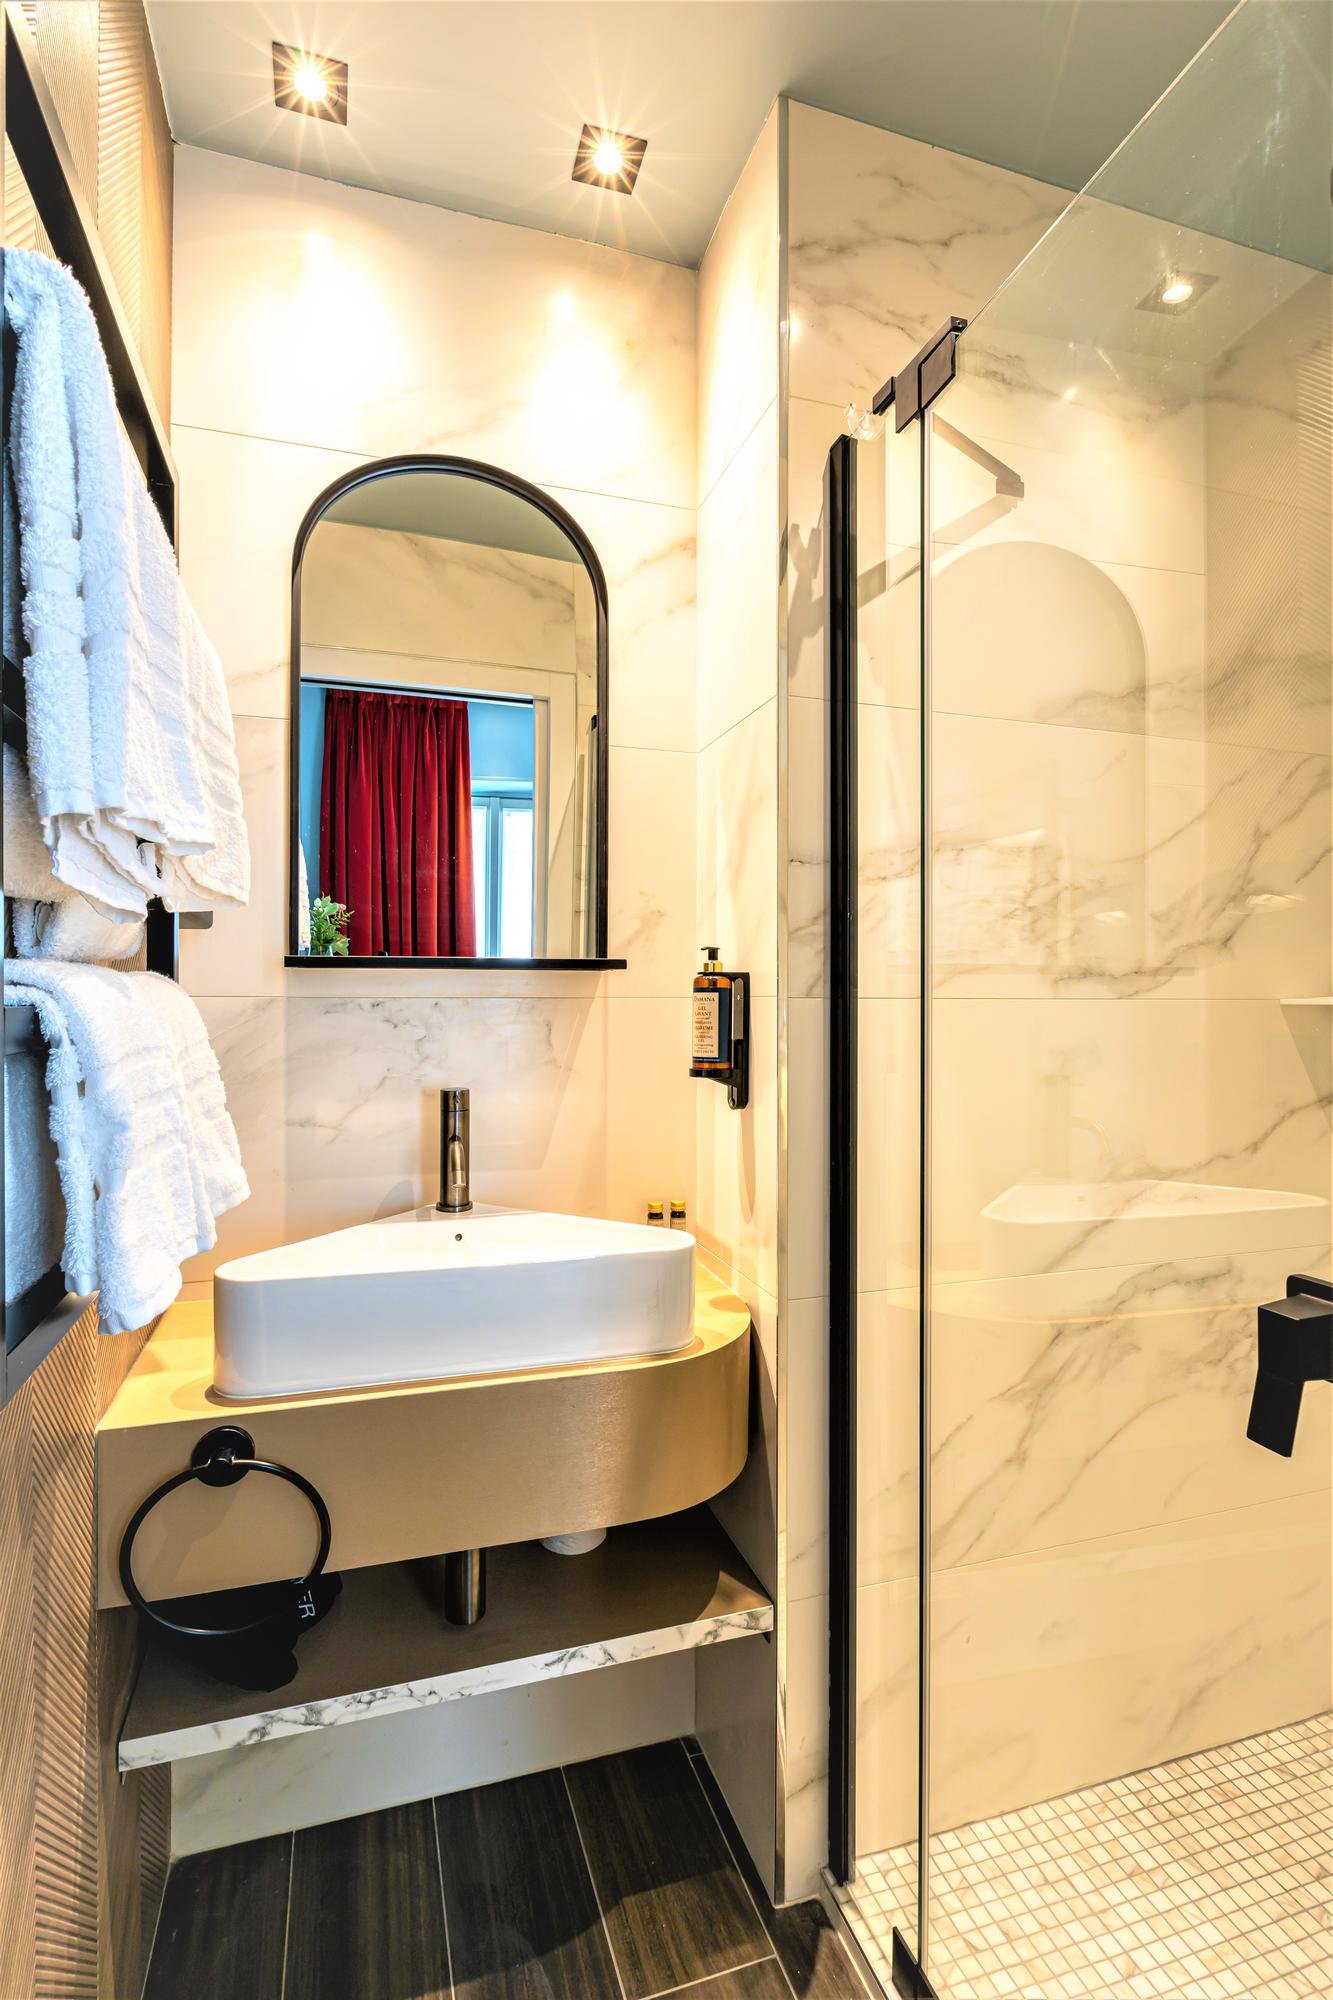 Hôtel Veryste - Verydouce Room - Bathroom